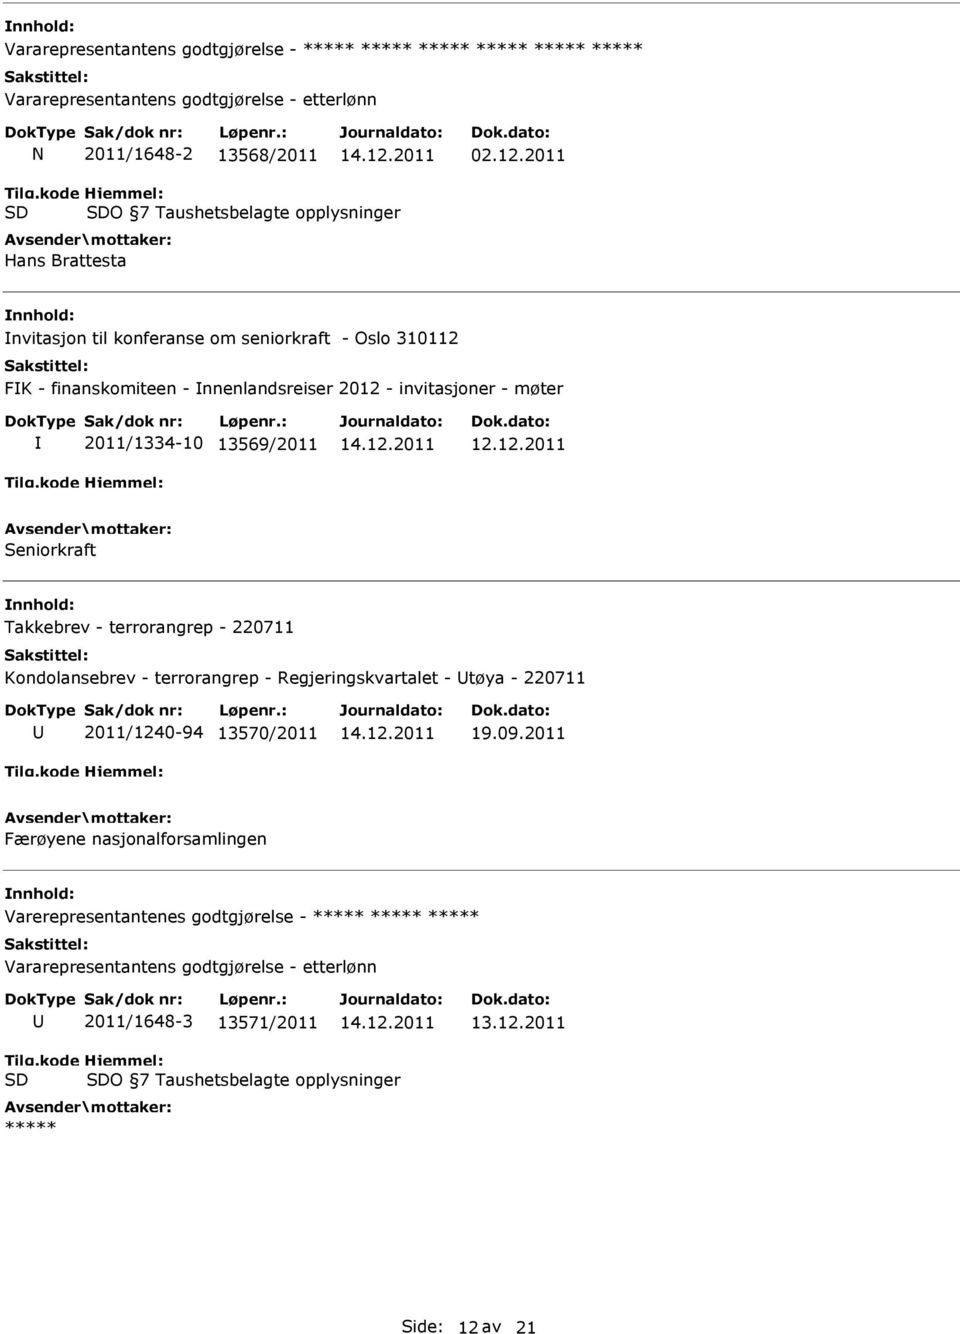 invitasjoner - møter 2011/1334-10 13569/2011 Seniorkraft Kondolansebrev - terrorangrep - Regjeringskvartalet - tøya - 220711 94 13570/2011 Færøyene nasjonalforsamlingen